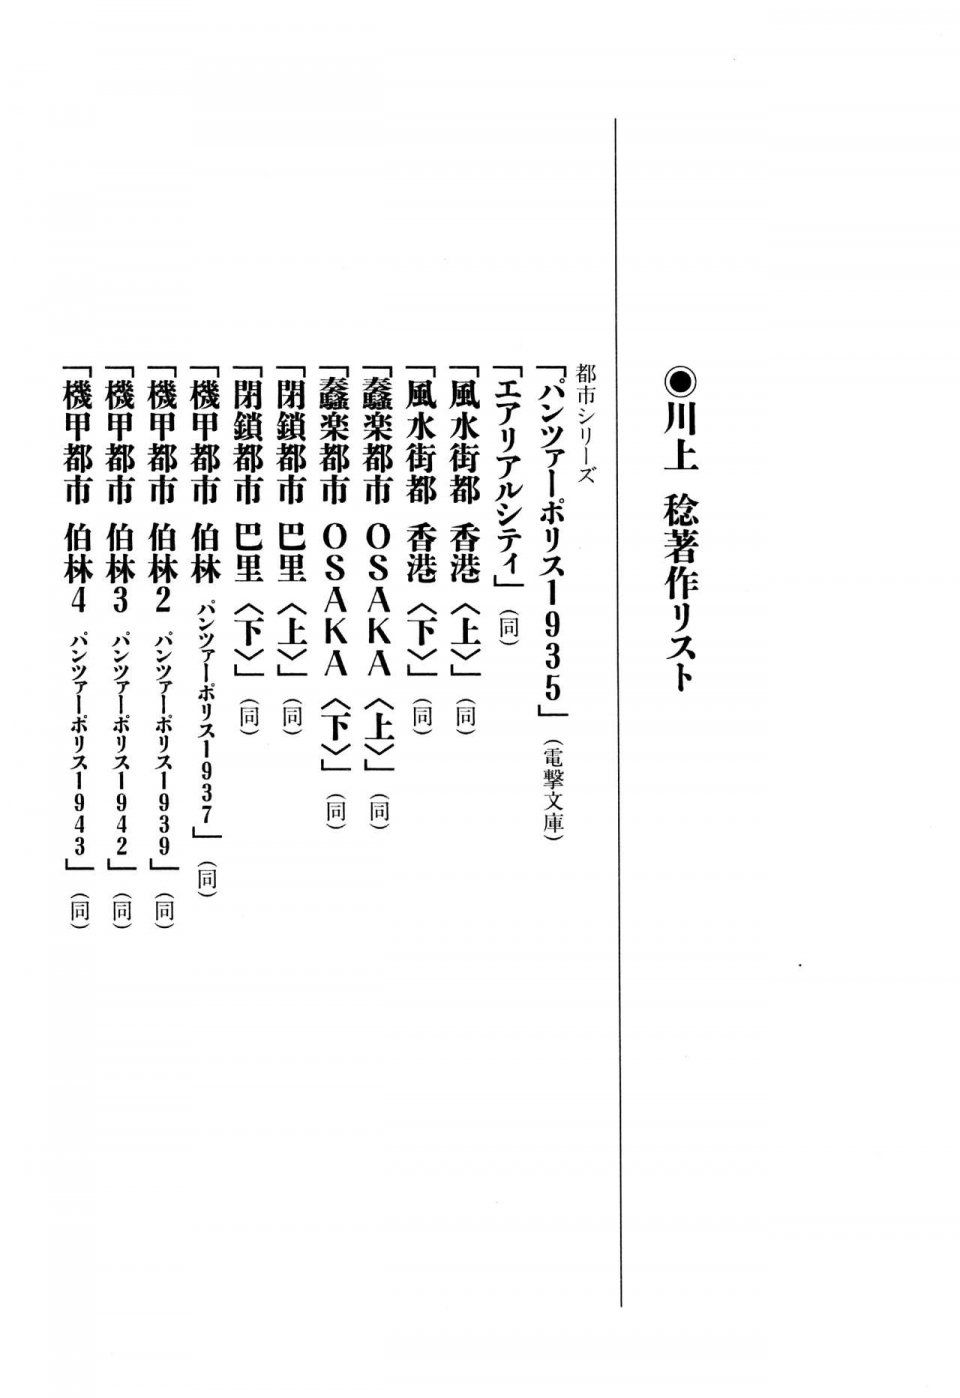 Kyoukai Senjou no Horizon LN Vol 13(6A) - Photo #706